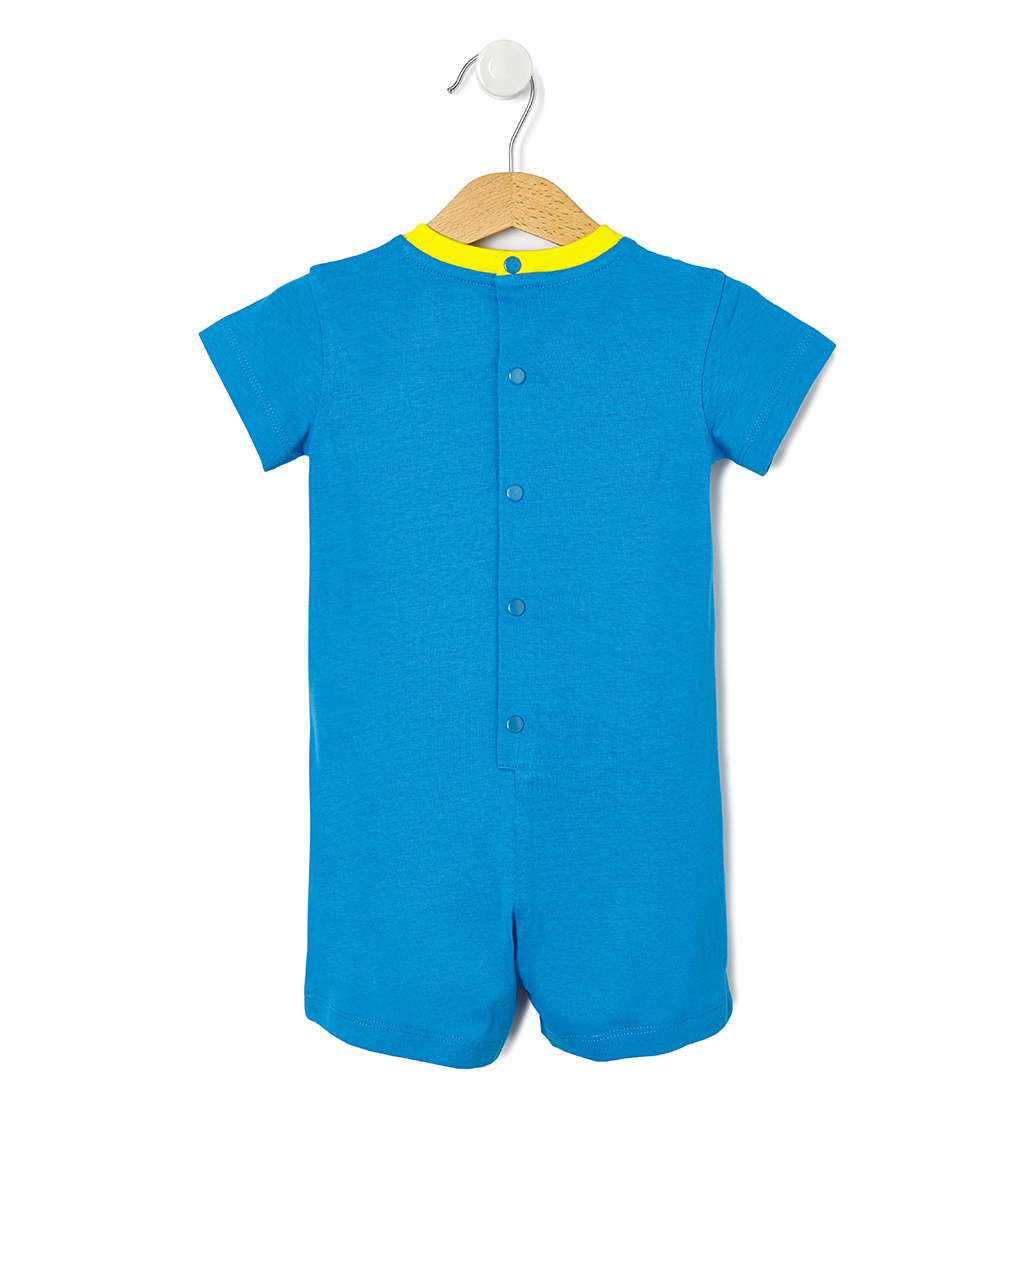 πιτζάμα jersey μπλε με στάμπα παπαγαλάκι για αγόρι - Prénatal